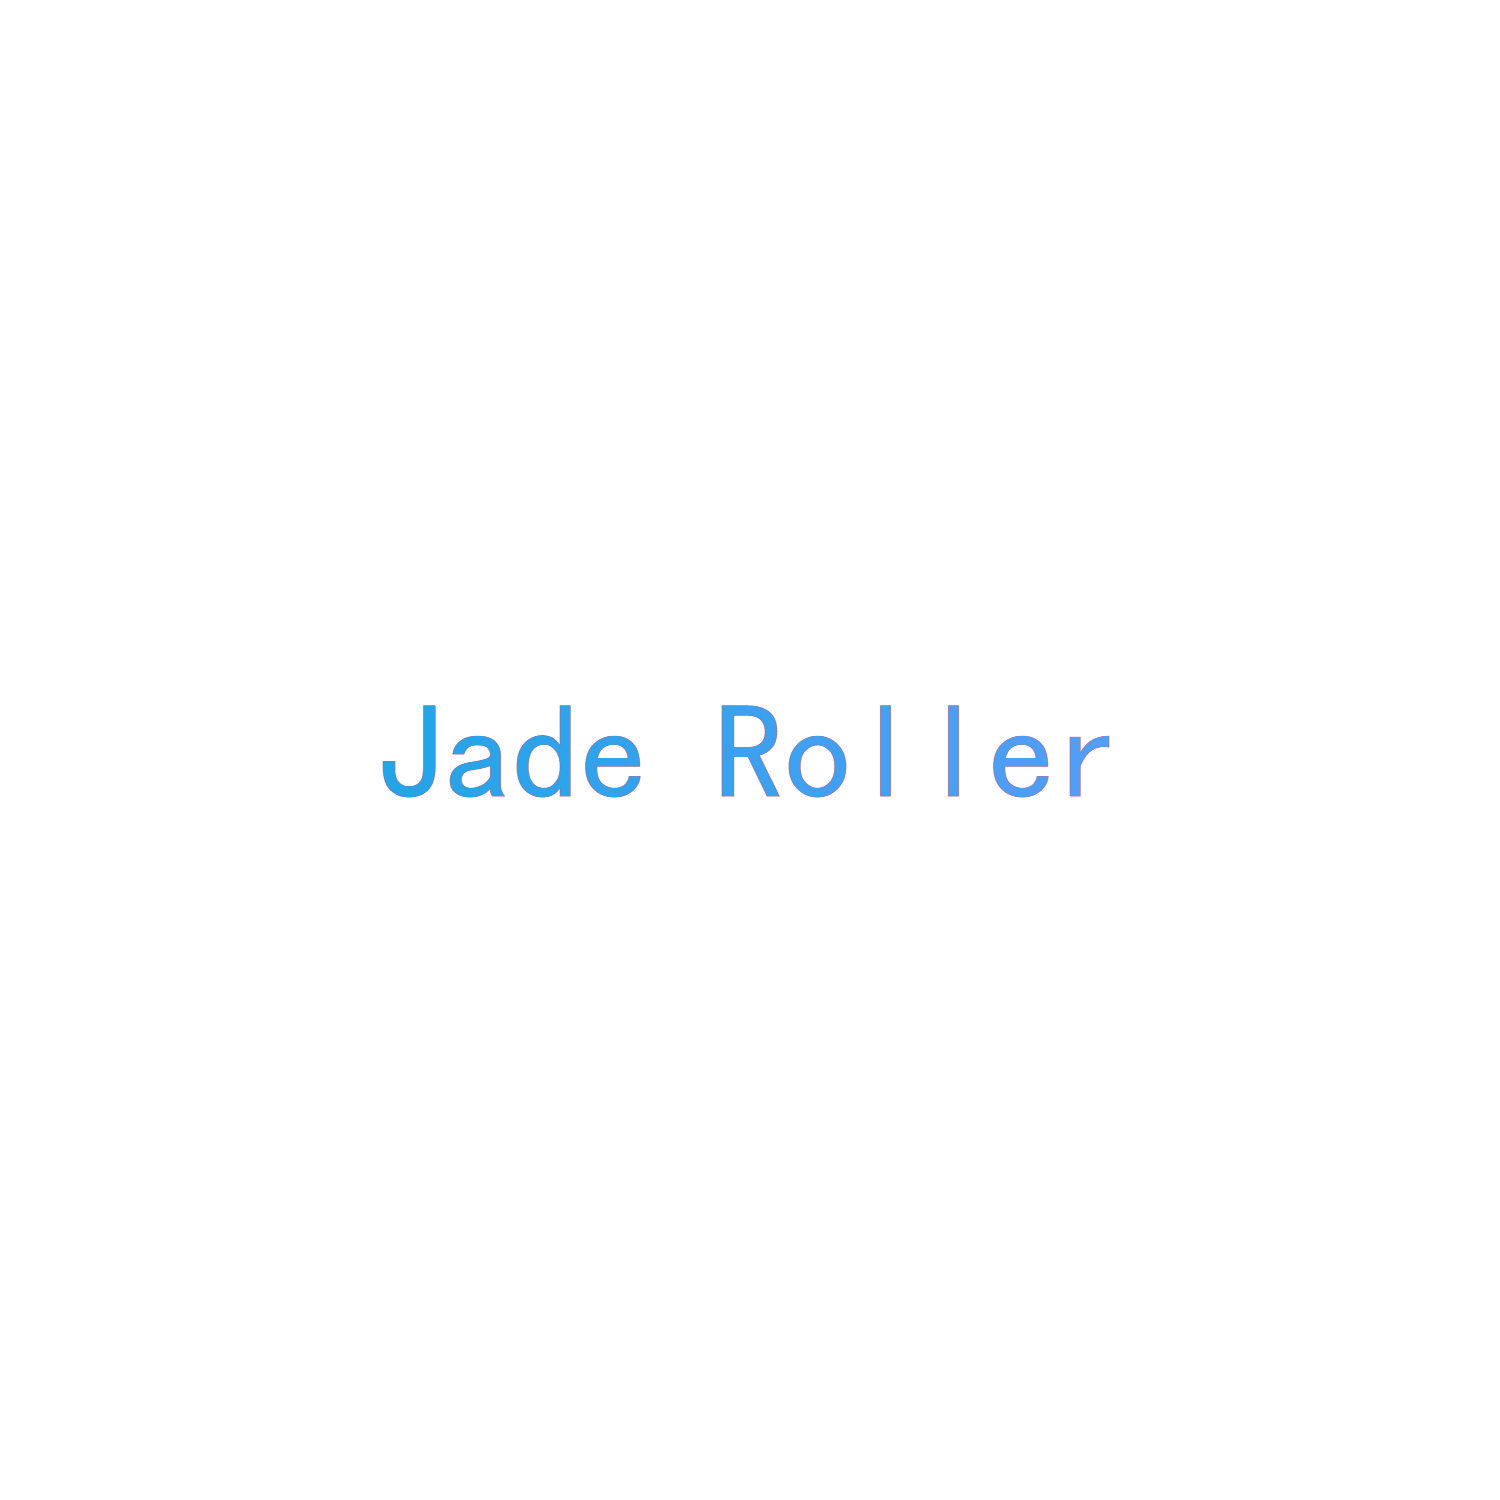 JADE ROLLER